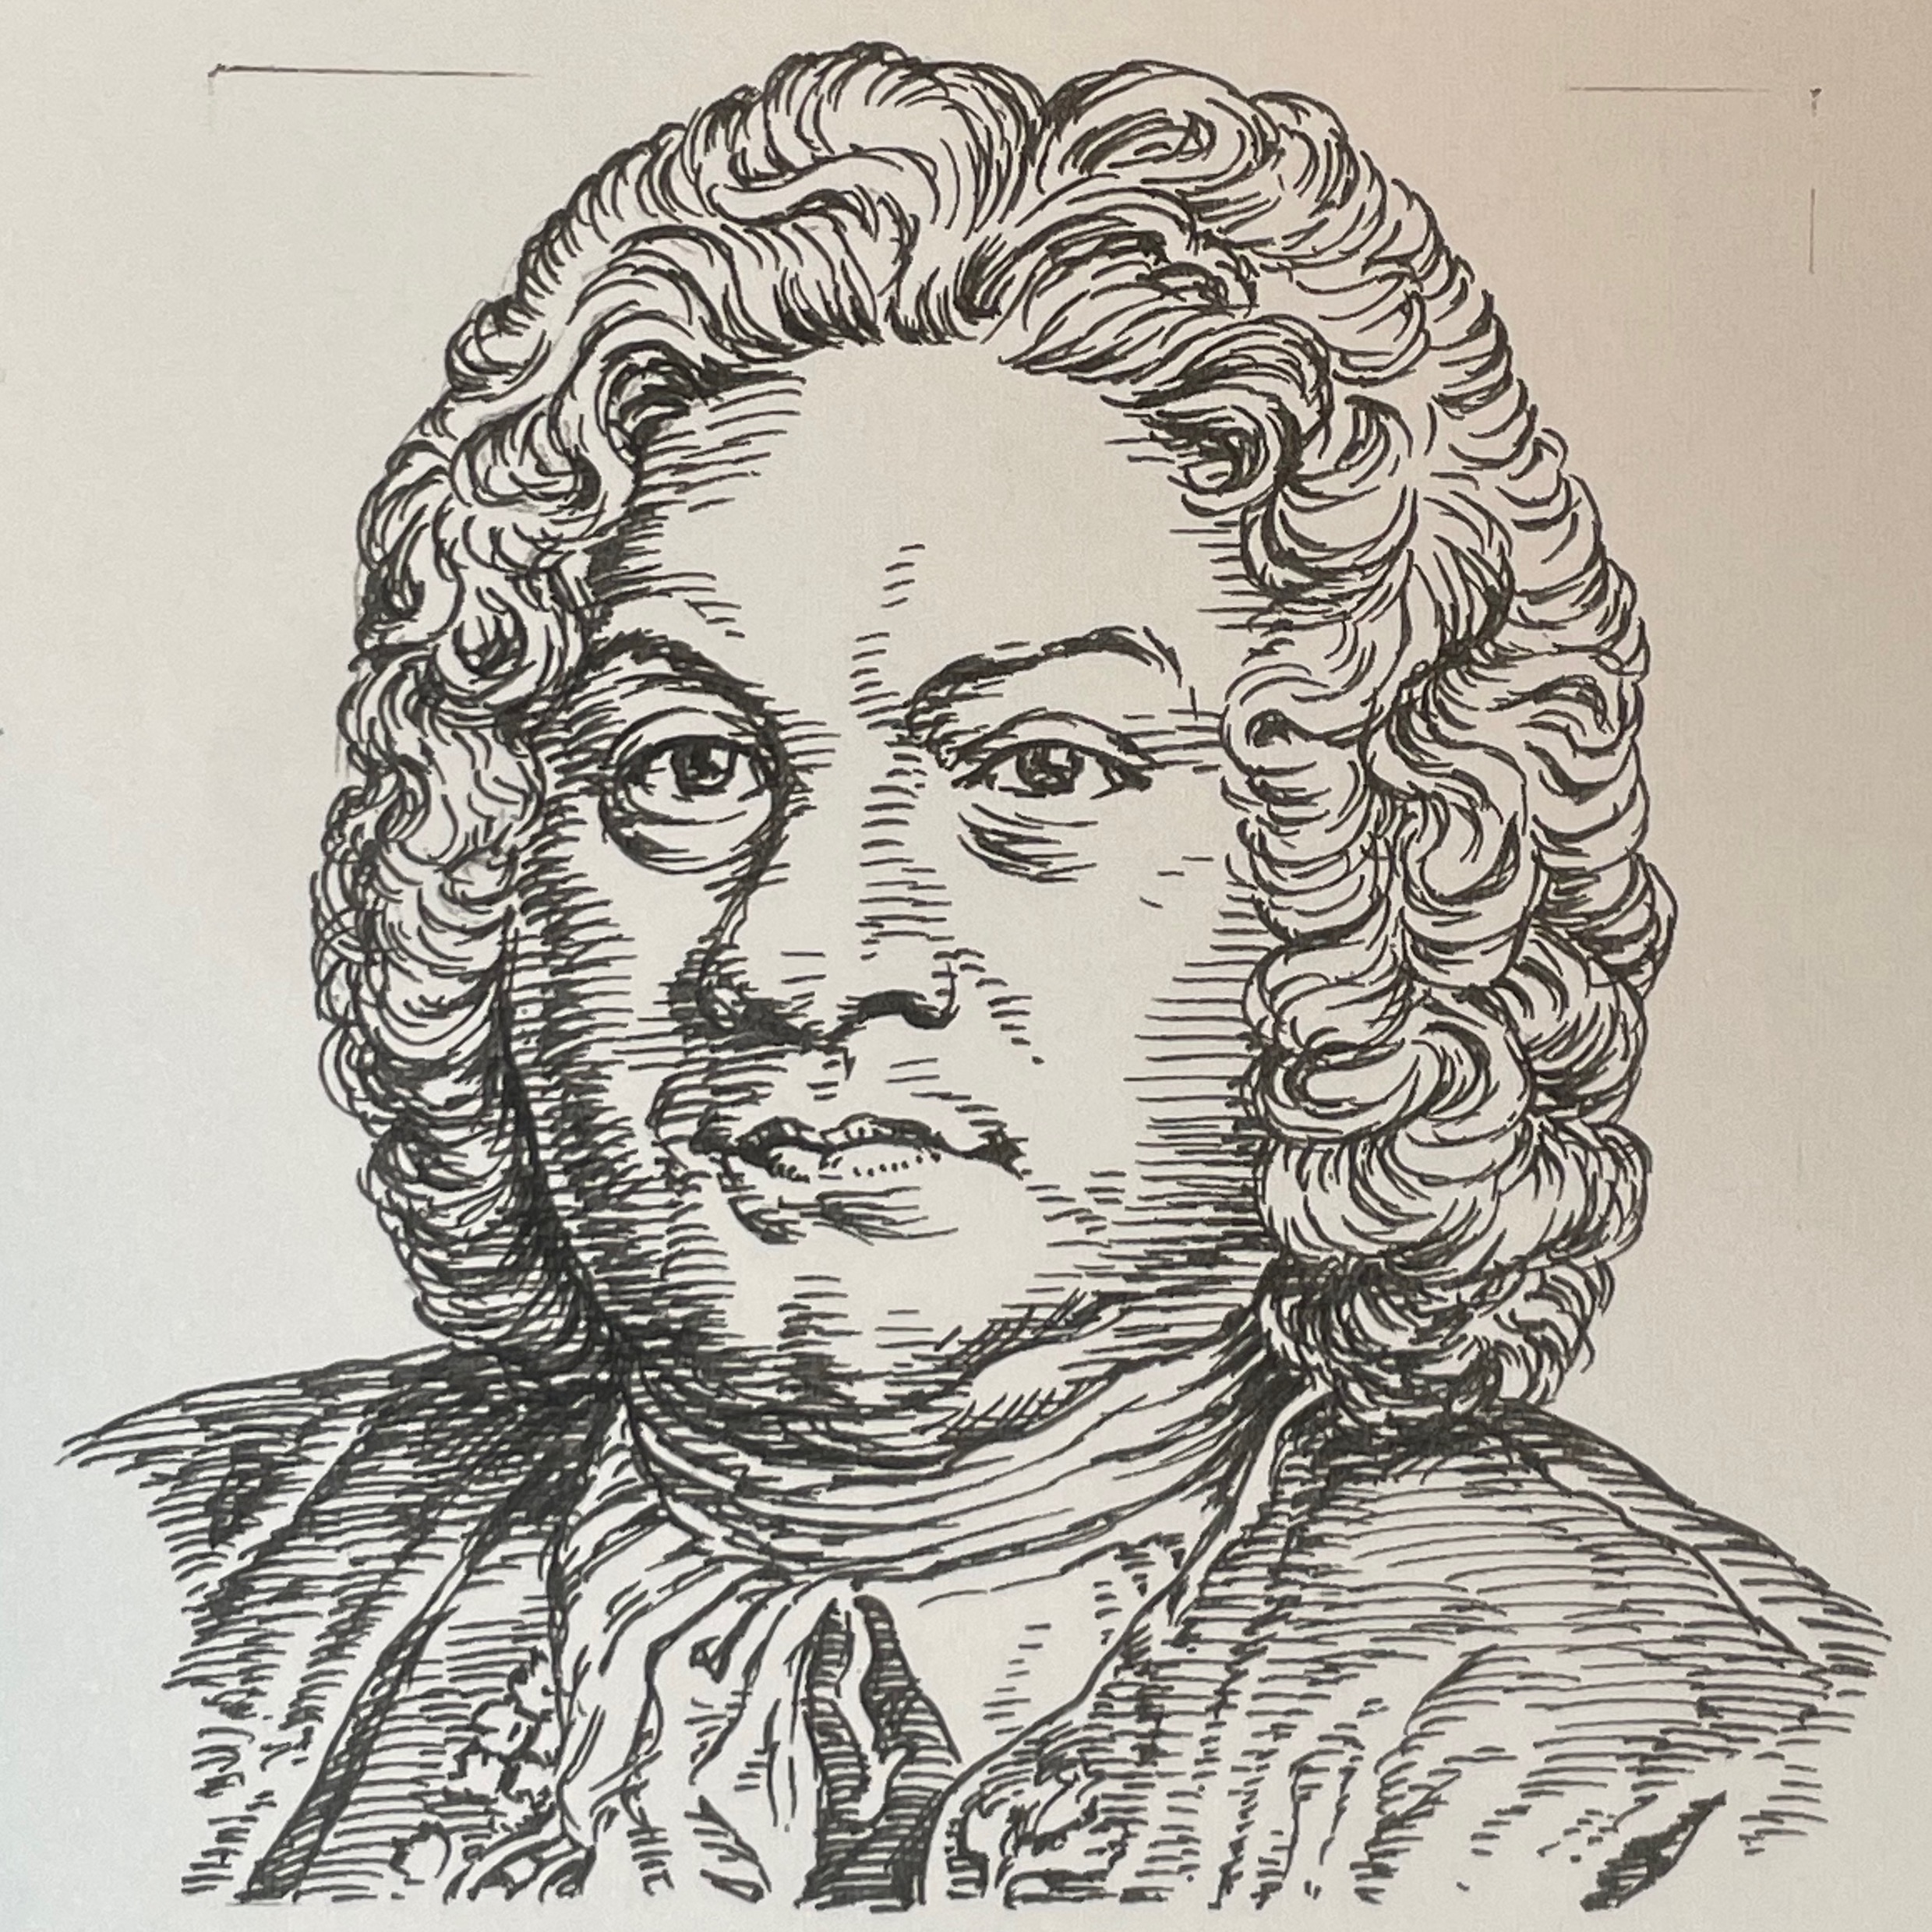 1668-1733を生きた作曲家。ルイ王朝末期に最も活躍したチェンバリストであり、クラヴサン楽派の頂点を極めた。フランスにおける鍵盤楽器のための小品集OrdresやPièces de clavecinは宮廷、社交場で奏でられる作品として作曲。その軽快で柔らかい、繊細で優美な音楽は、複雑で重厚なバロック音楽からロココ時代の幕開けとなった。フランソワのオルドルは現在もクラヴサン奏者の手本であり、その教えは音楽教師の在り方でもあった。